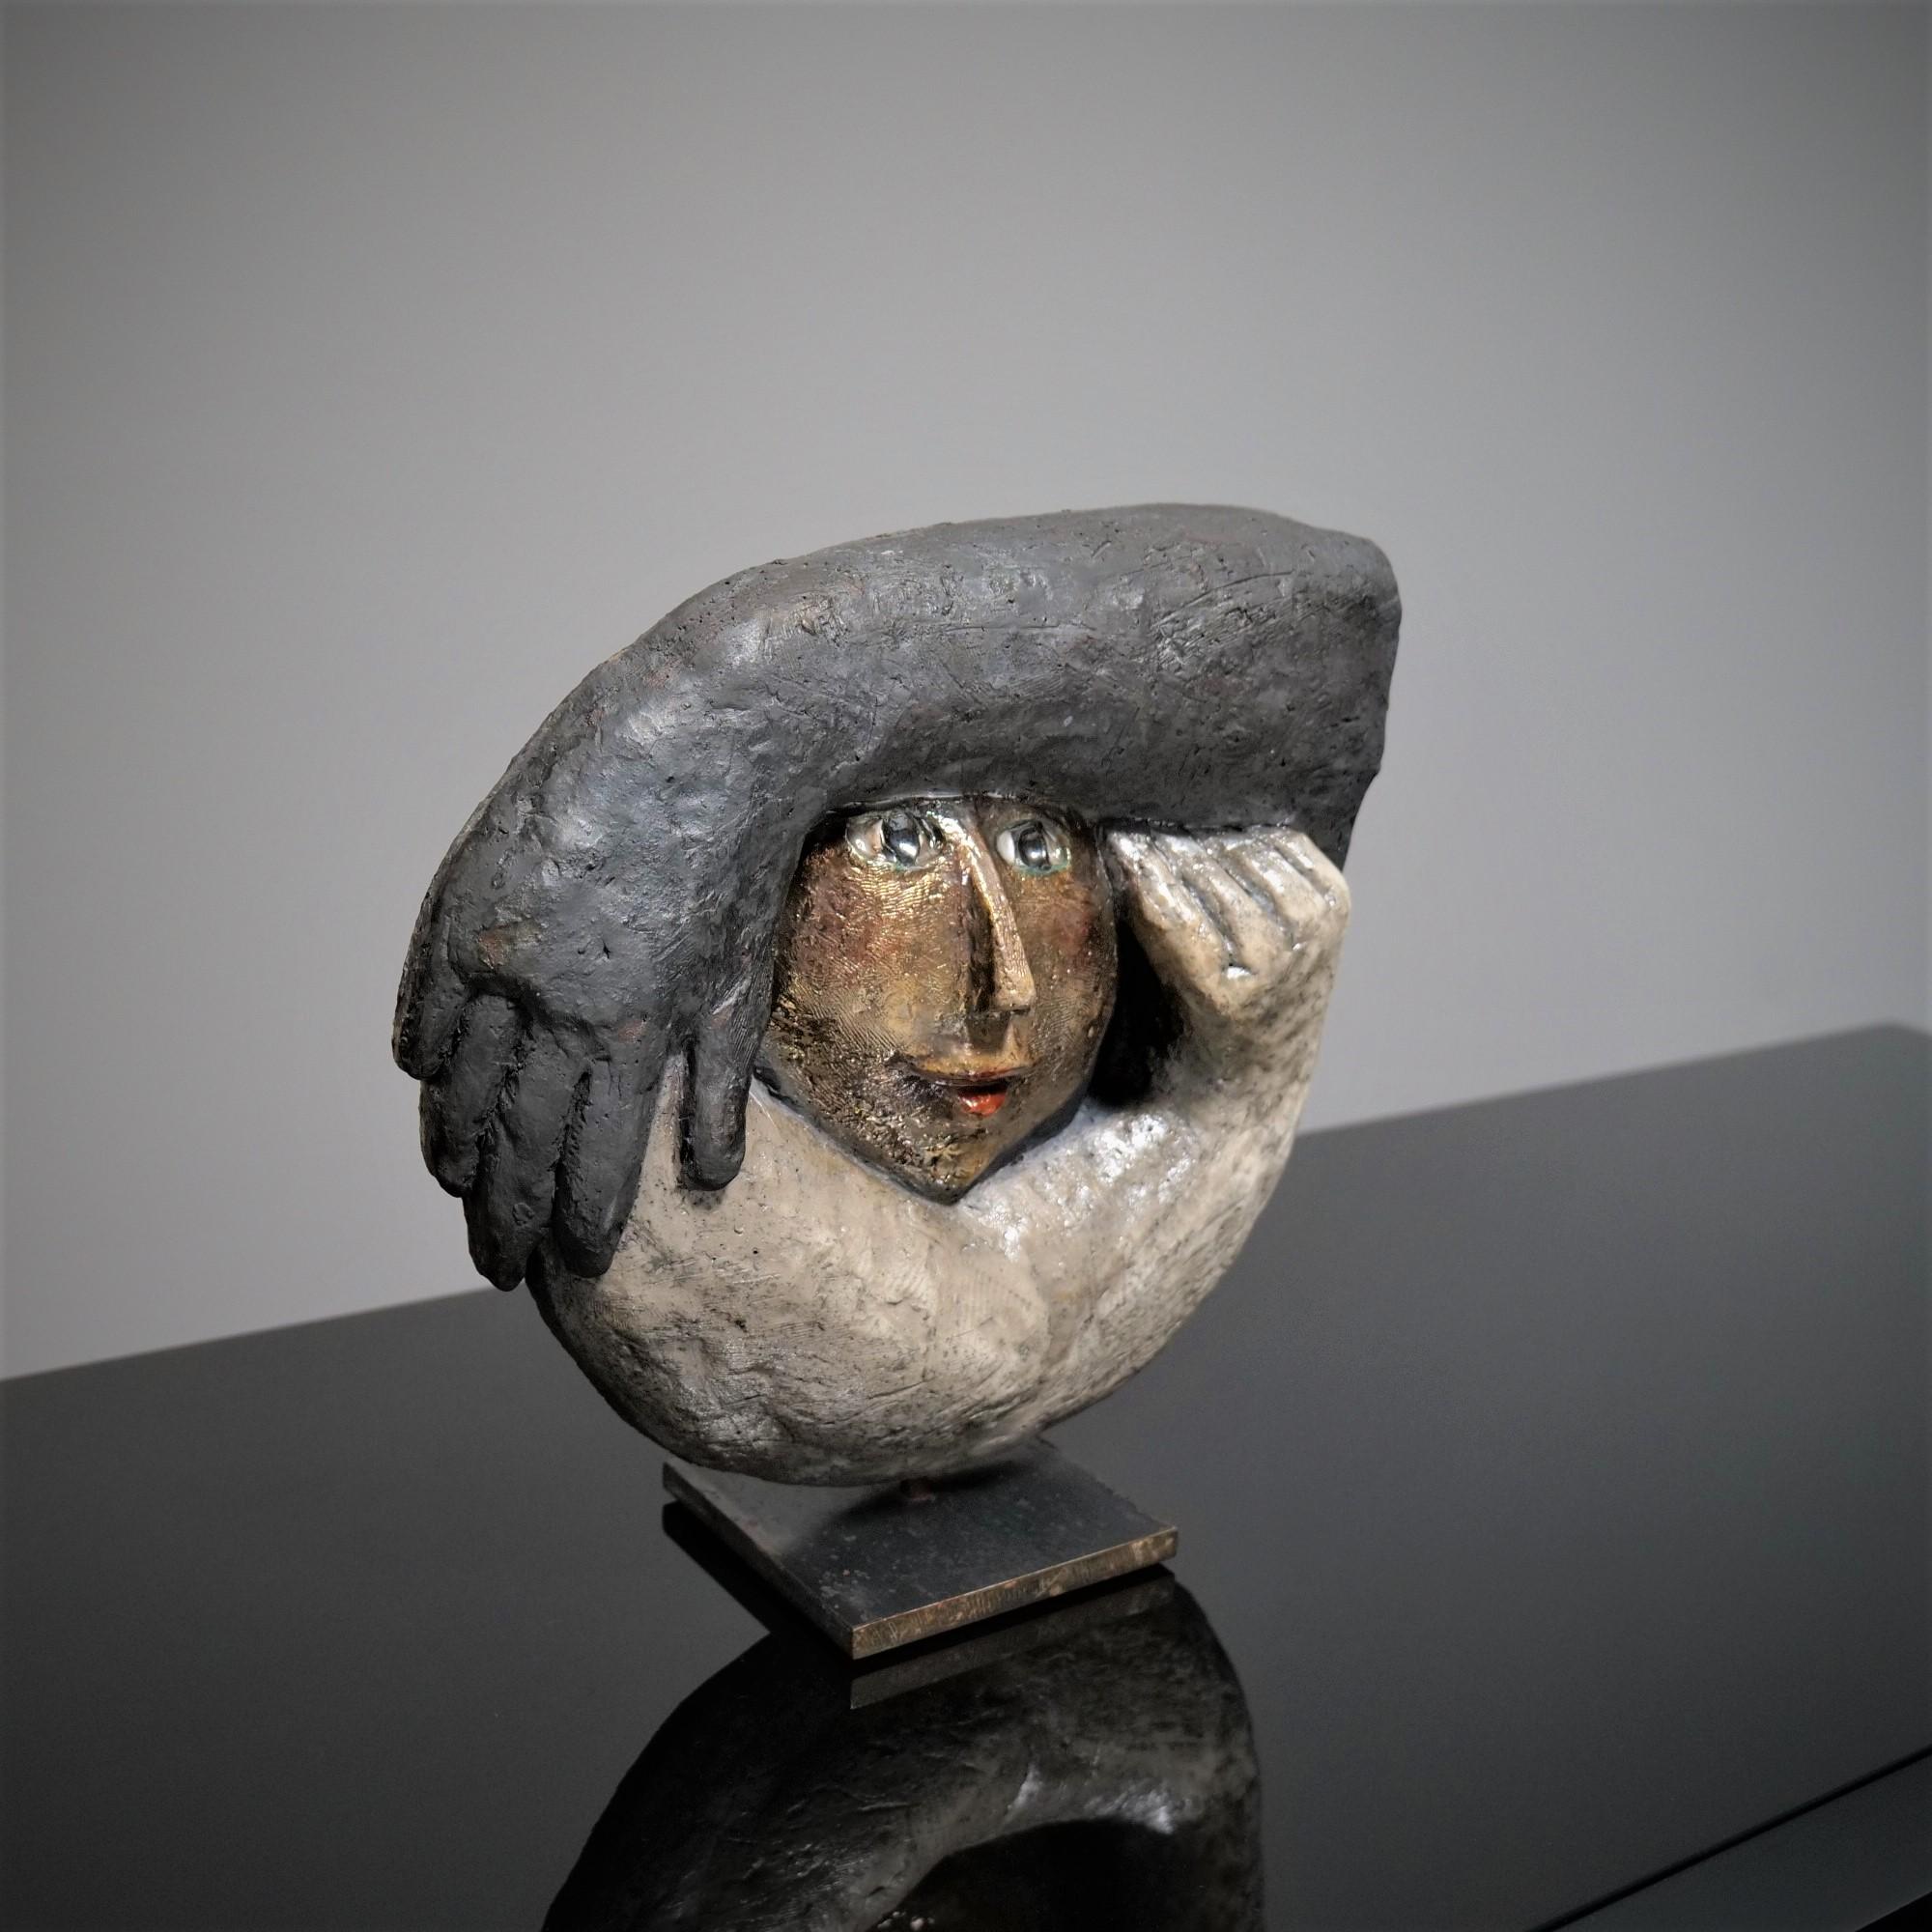 French Roger Capron, Double-sided ceramic “Kokon”, 2002